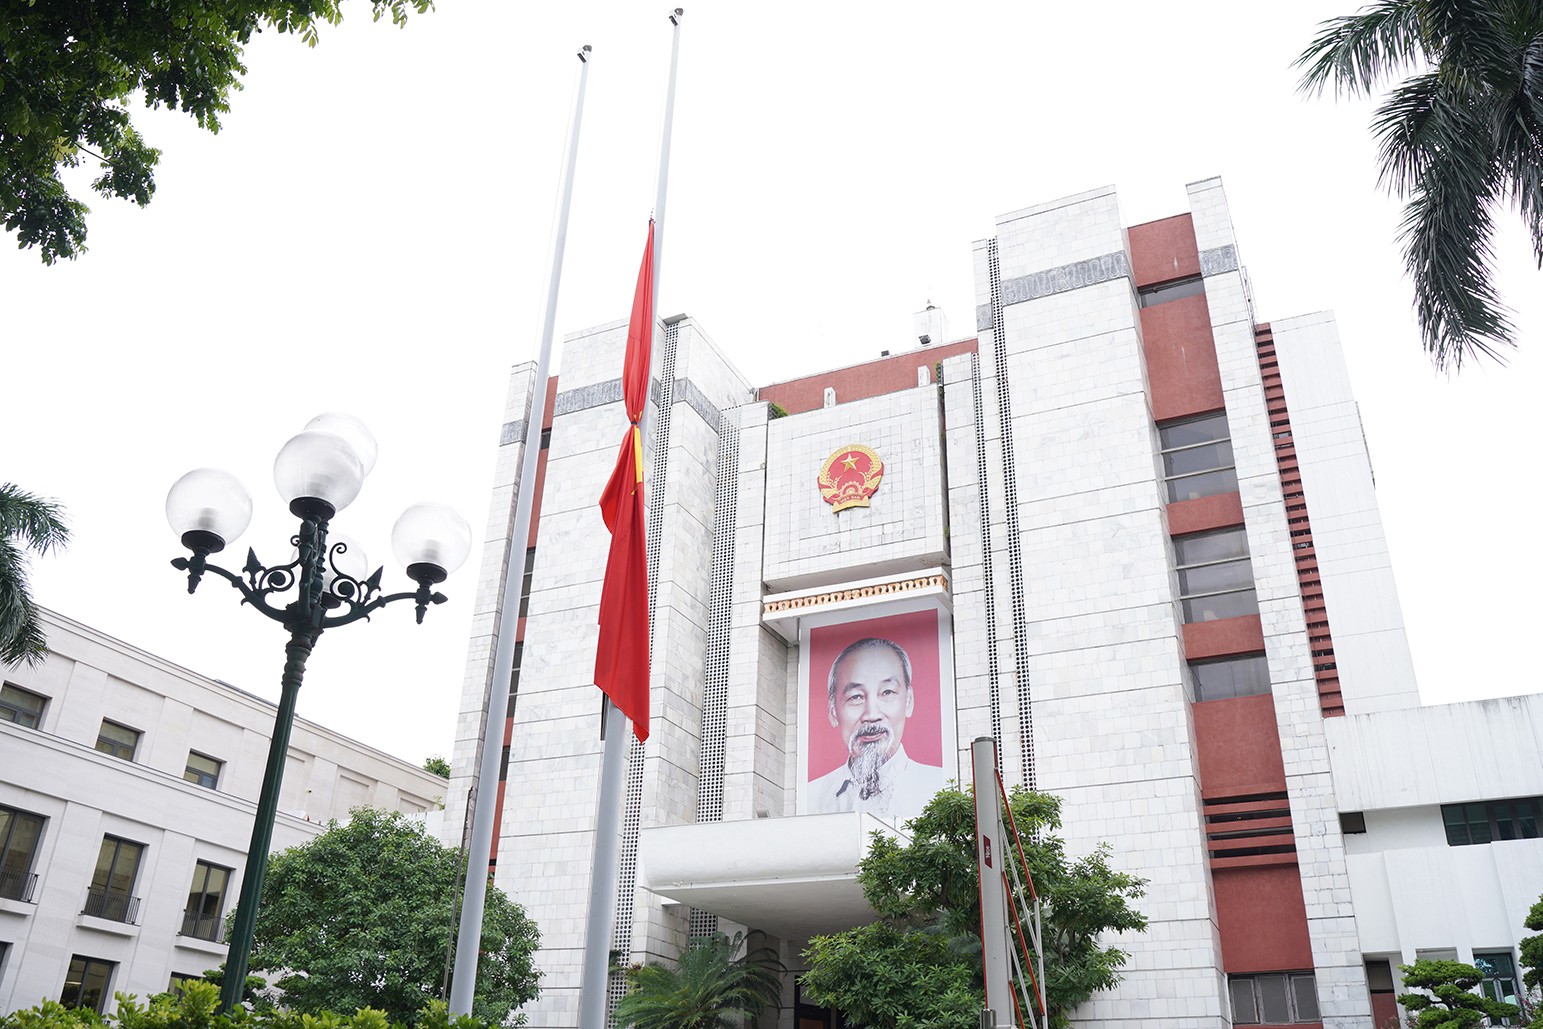 Trụ sở HĐND, UBND TP Hà Nội đã treo cờ rủ từ nhiều ngày nay